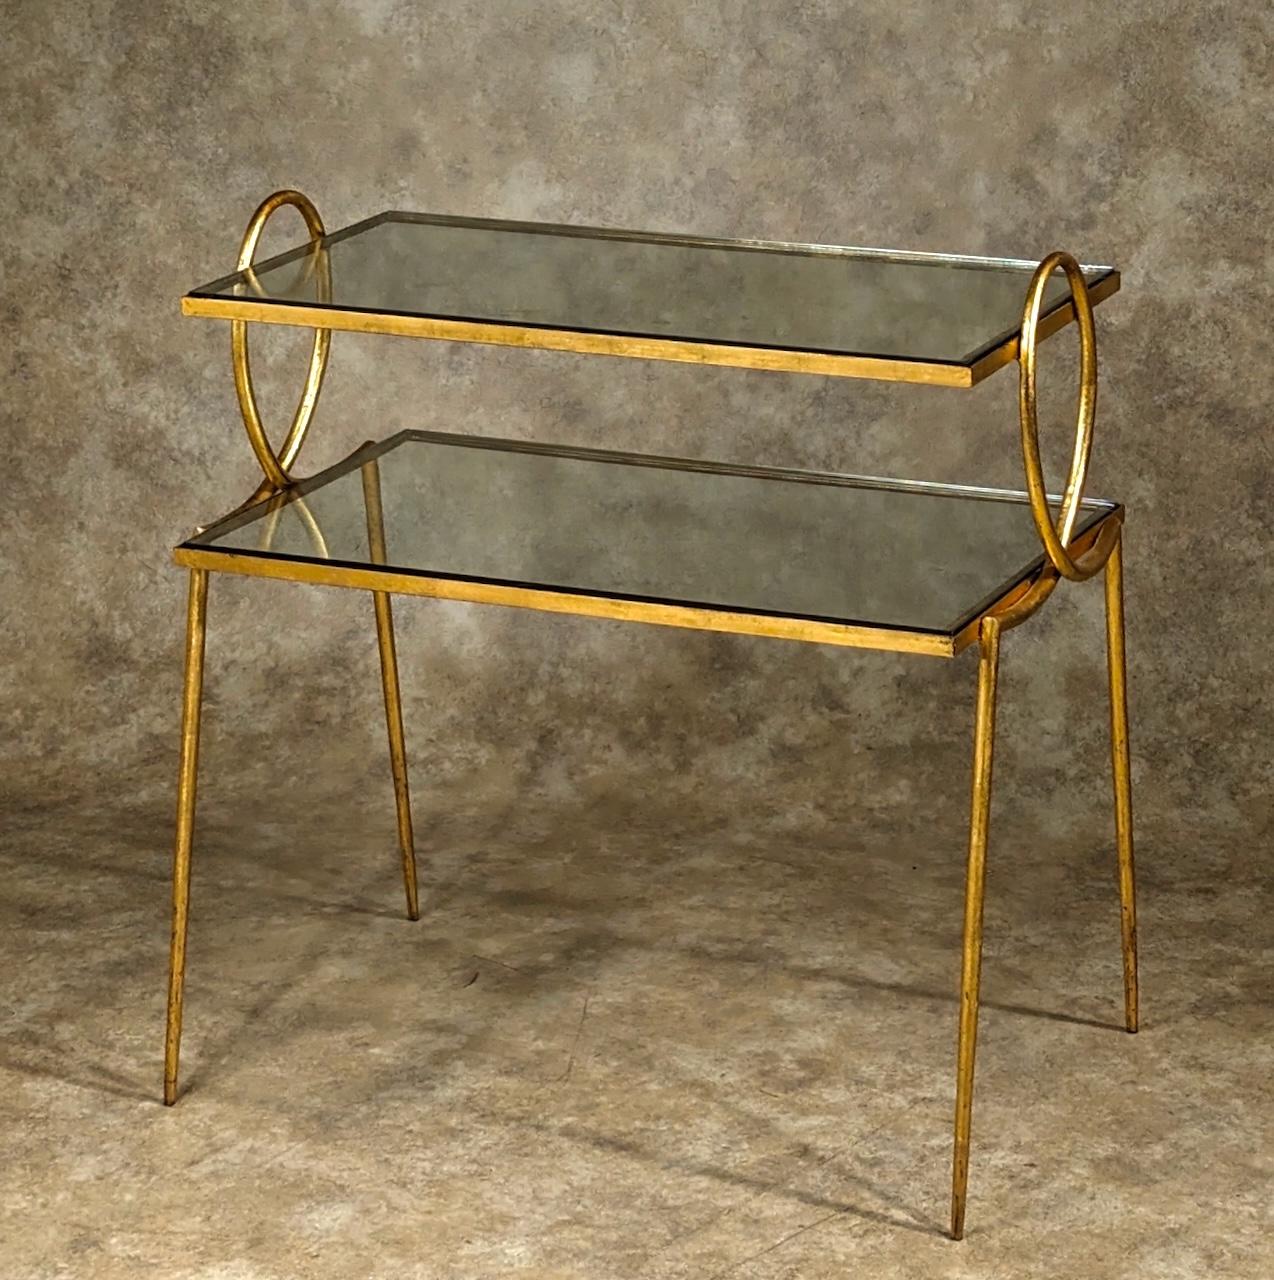 Table à deux niveaux Art Déco des années 40 par René Prou, 1949, en fer forgé doré avec inserts en verre. Ce modèle est présenté dans le numéro de novembre 1949 de la Maison Française. Voir les photos. 28,5